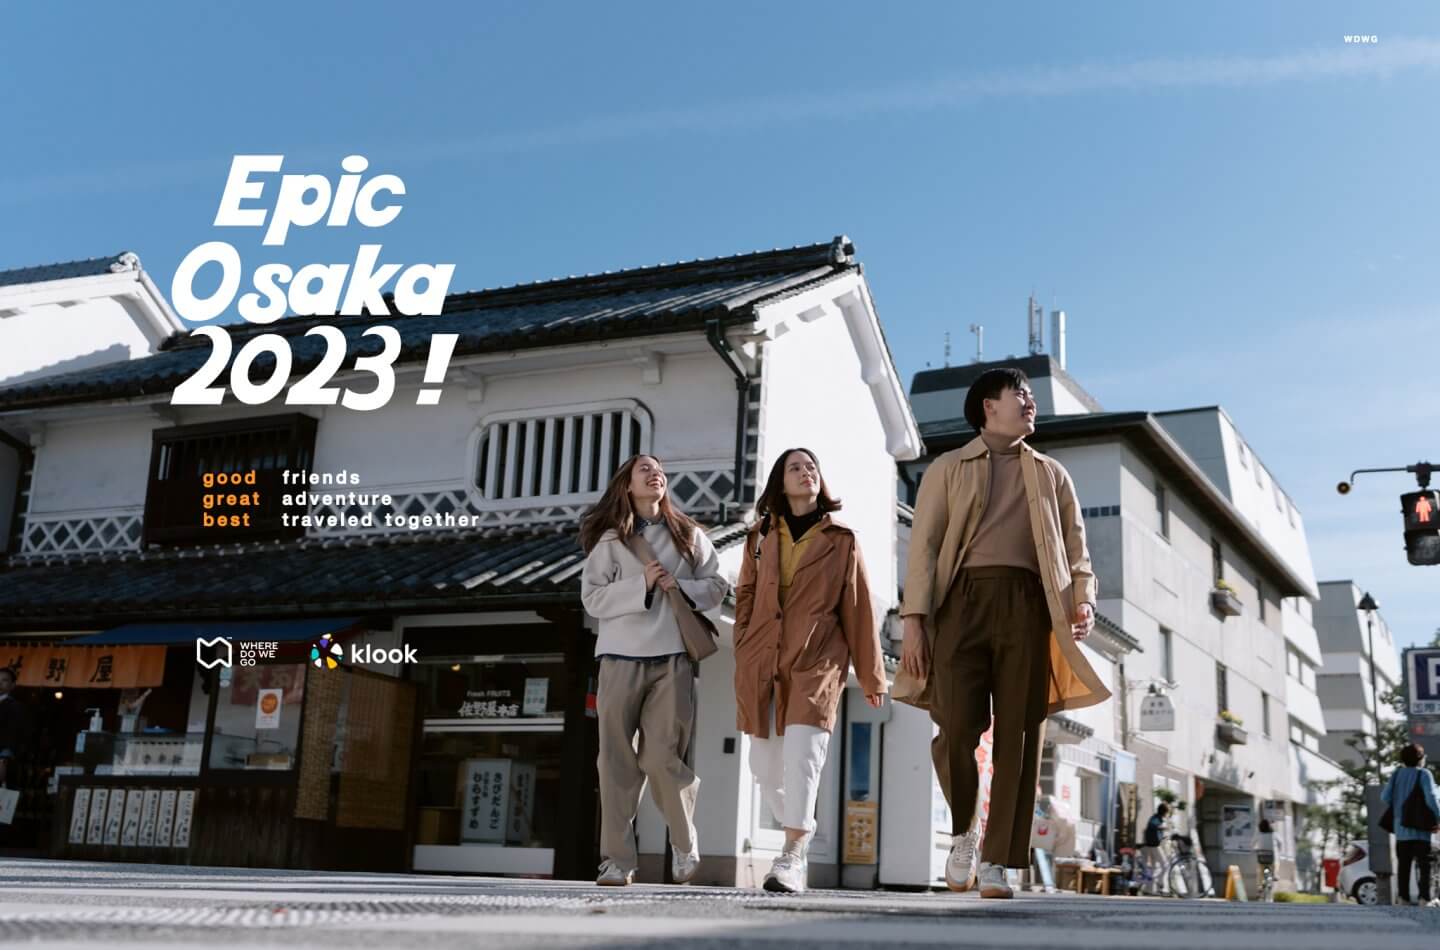 Epic OSAKA 2023!